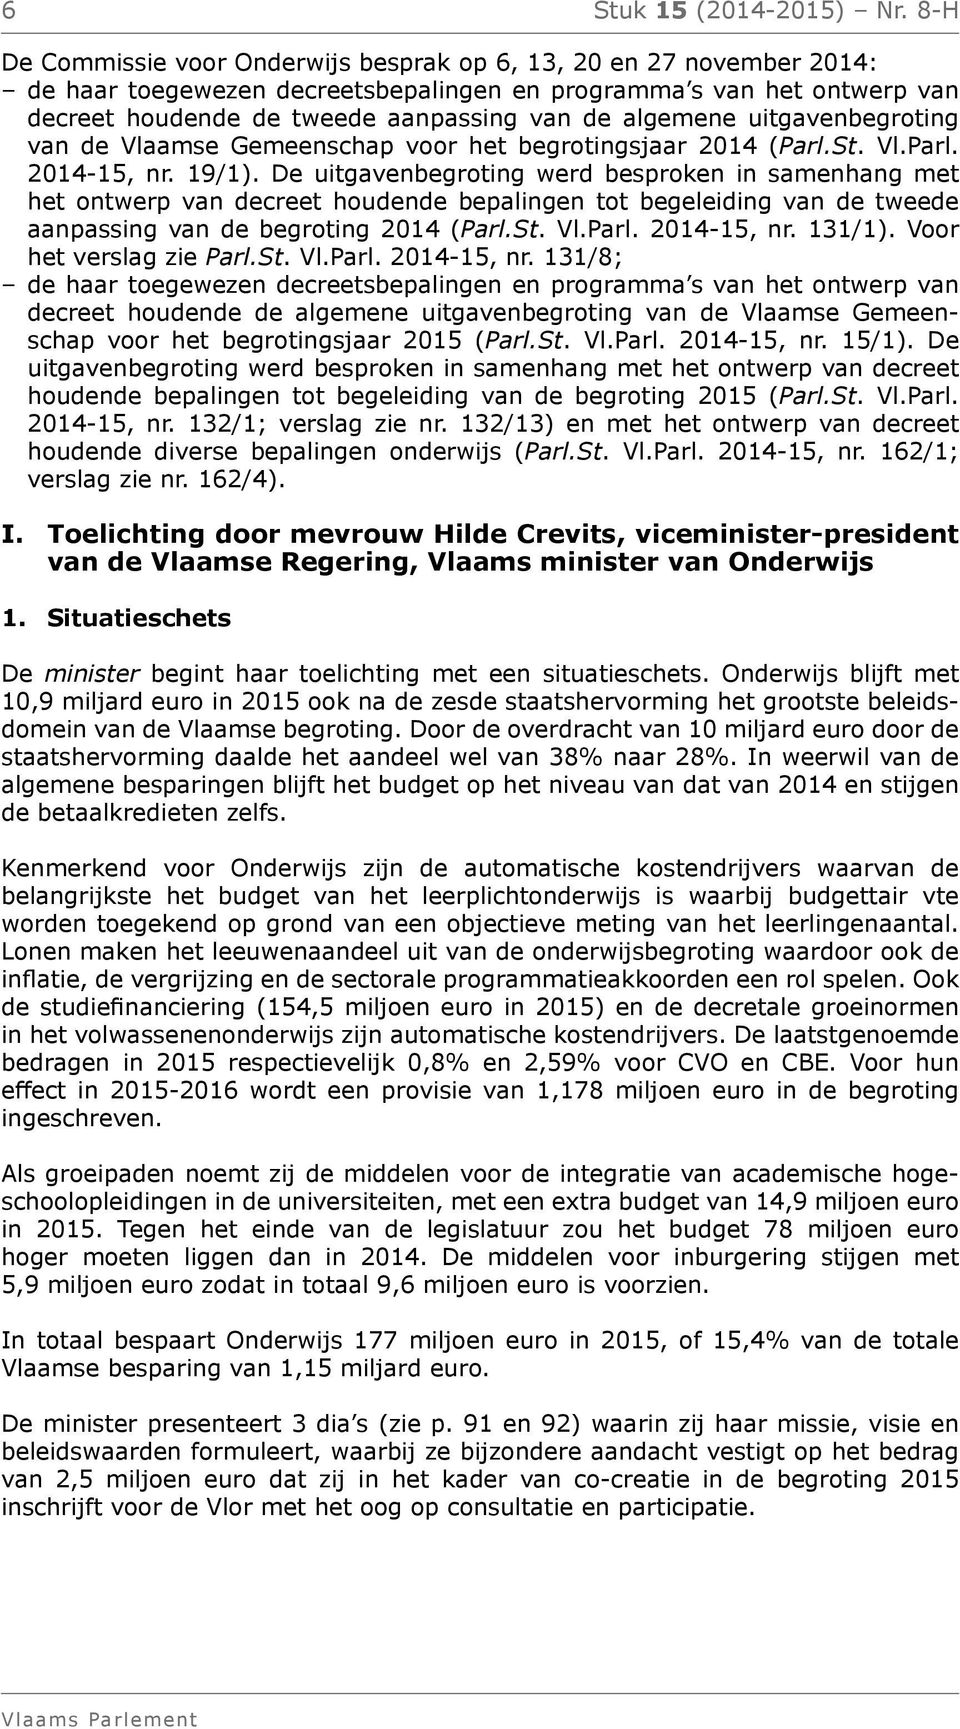 algemene uitgavenbegroting van de Vlaamse Gemeenschap voor het begrotingsjaar 2014 (Parl.St. Vl.Parl. 2014-15, nr. 19/1).